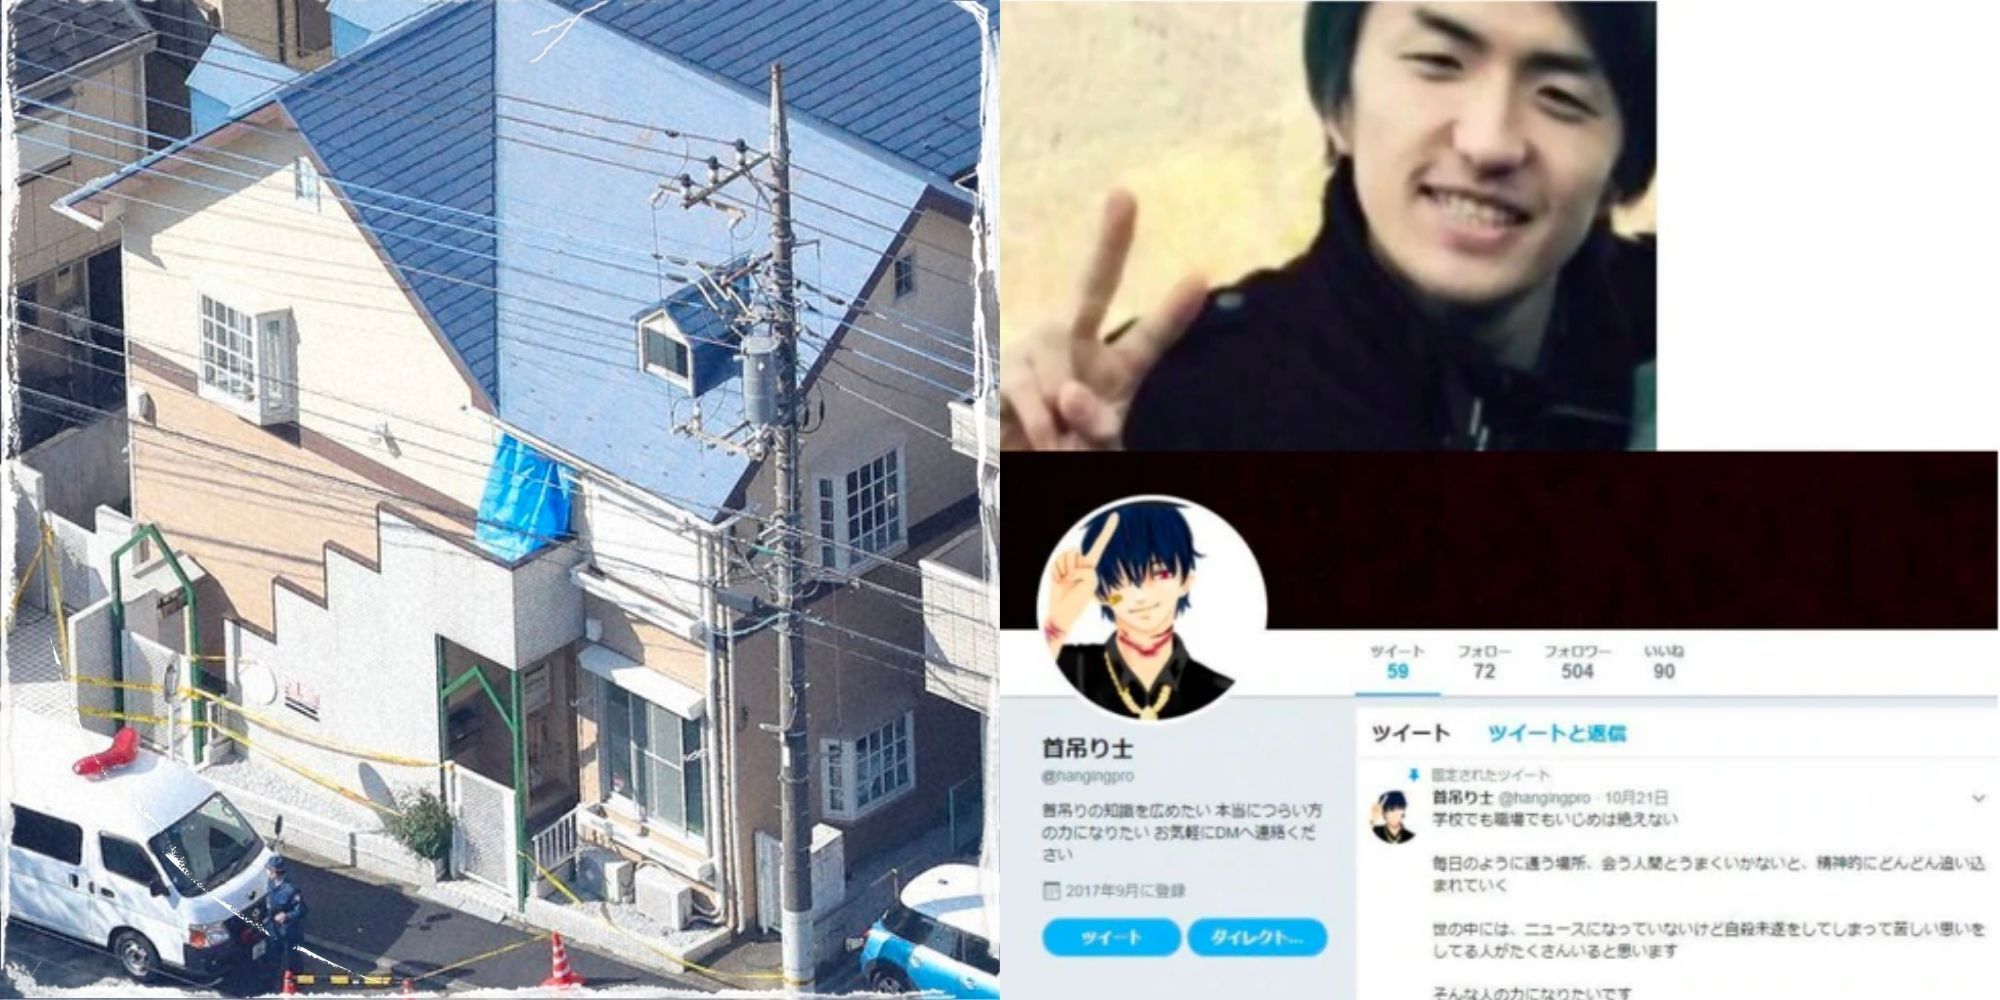 Takahiro Shiraishi the Twitter killer of Japan